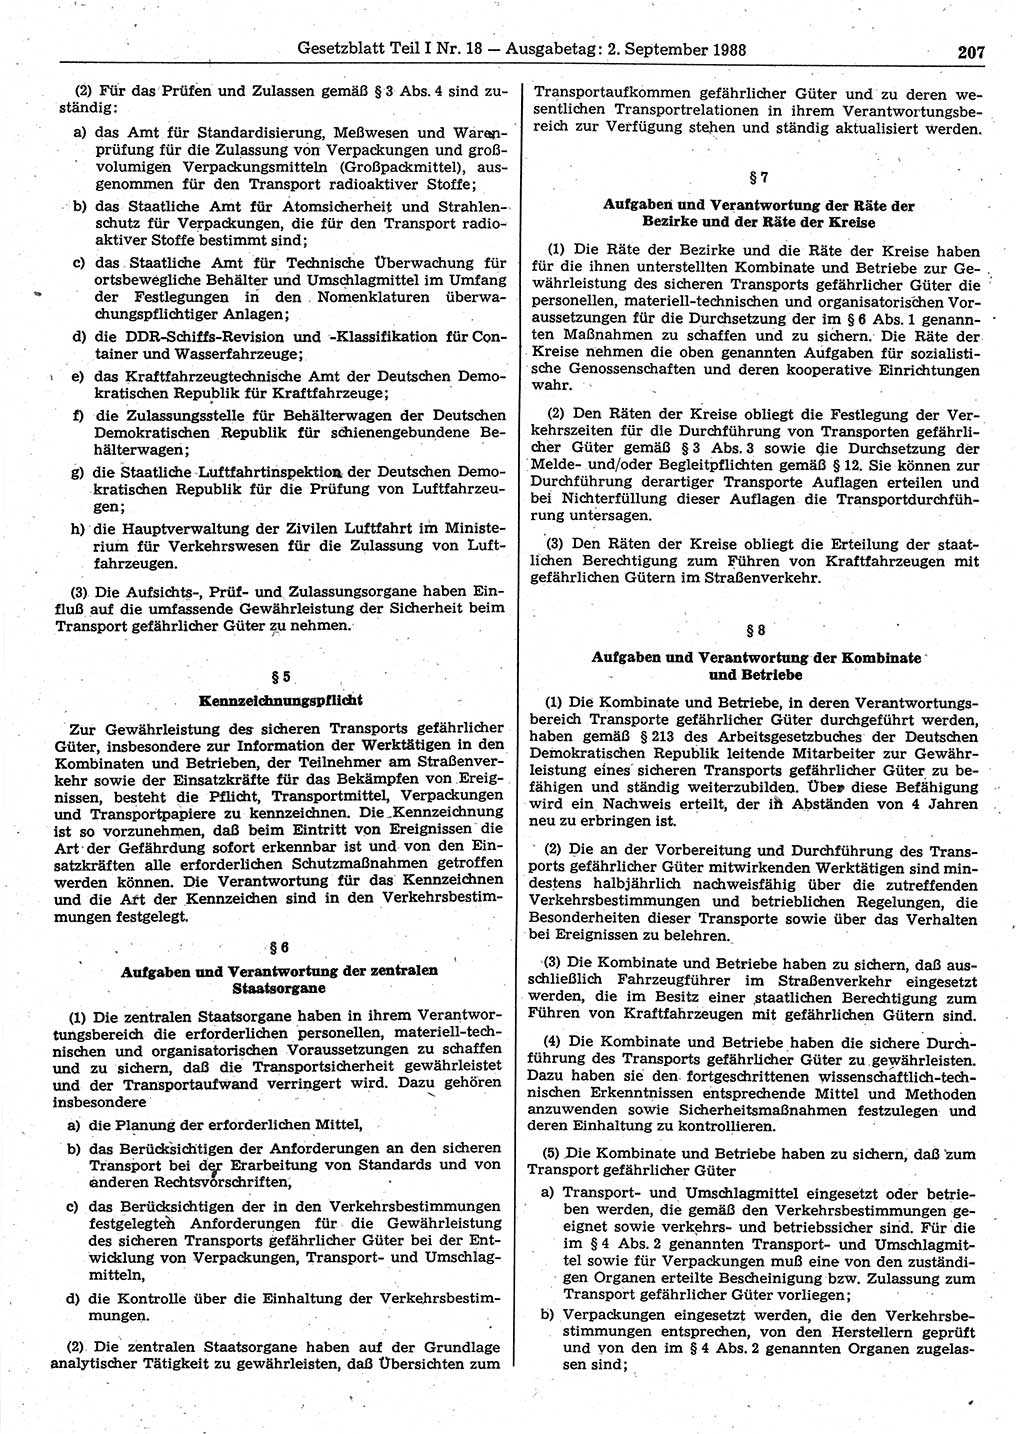 Gesetzblatt (GBl.) der Deutschen Demokratischen Republik (DDR) Teil Ⅰ 1988, Seite 207 (GBl. DDR Ⅰ 1988, S. 207)